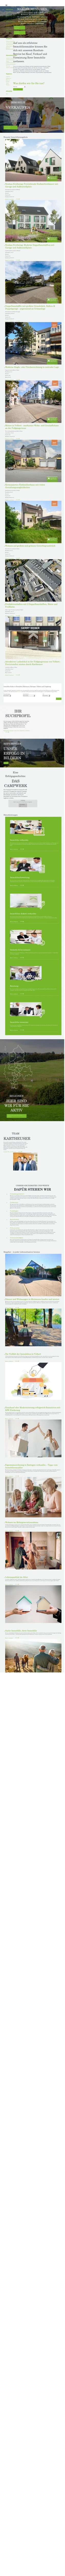 www.kartheuser-immobilien.de